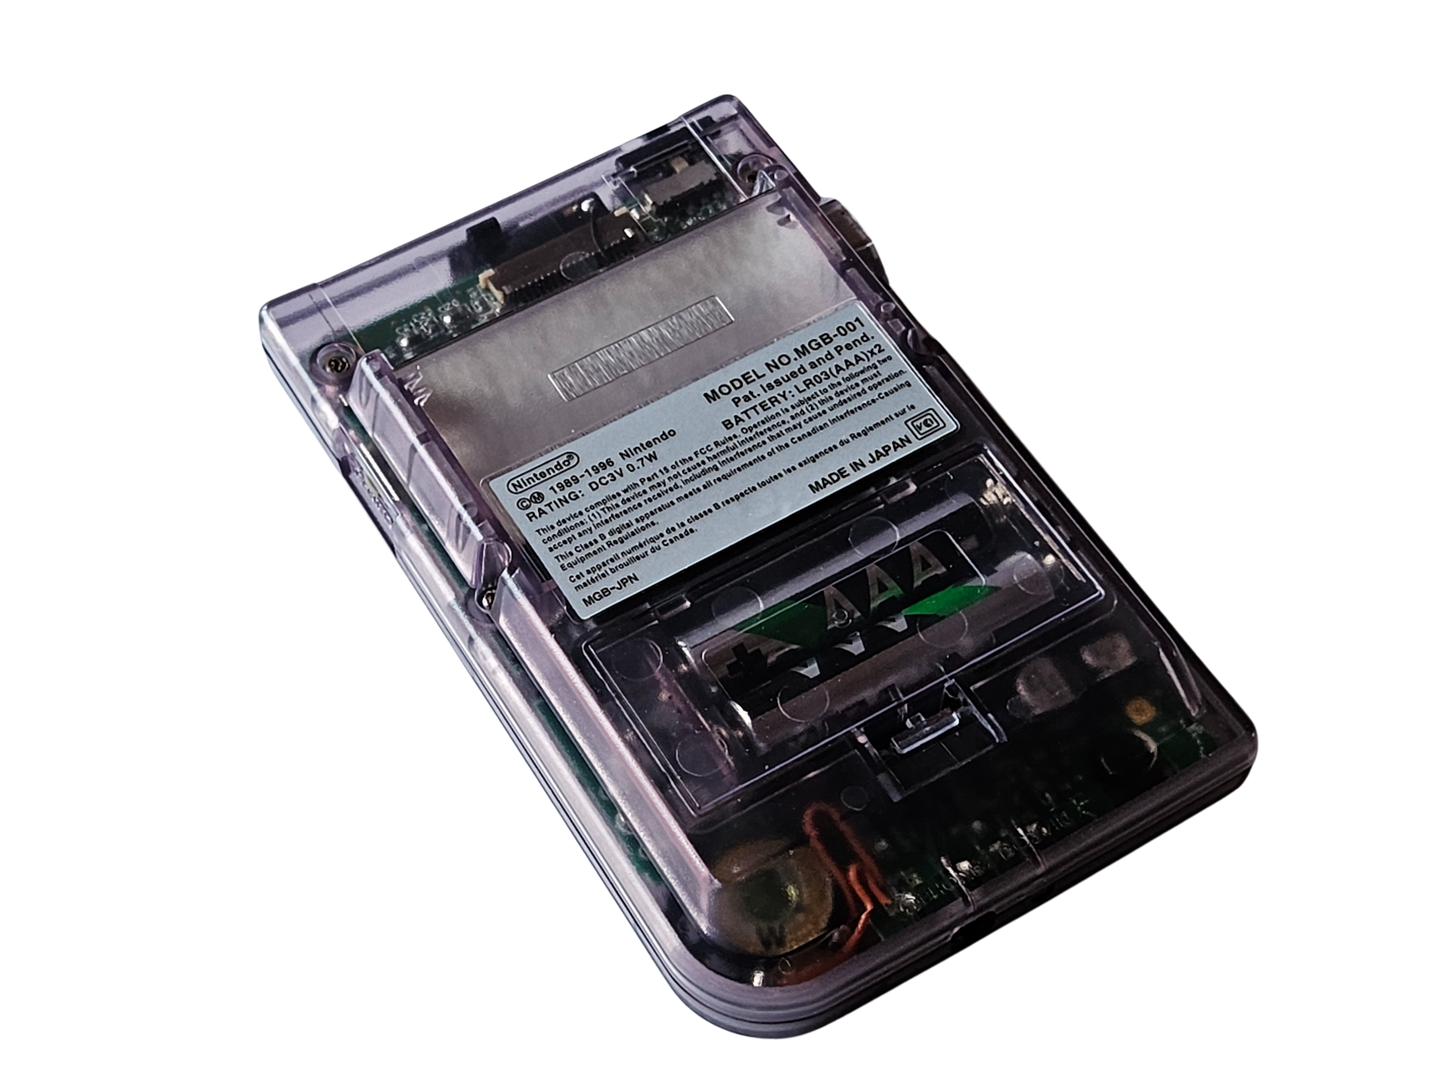 Custom Game Boy Pocket - Atomic Purple - IPS-Skärm